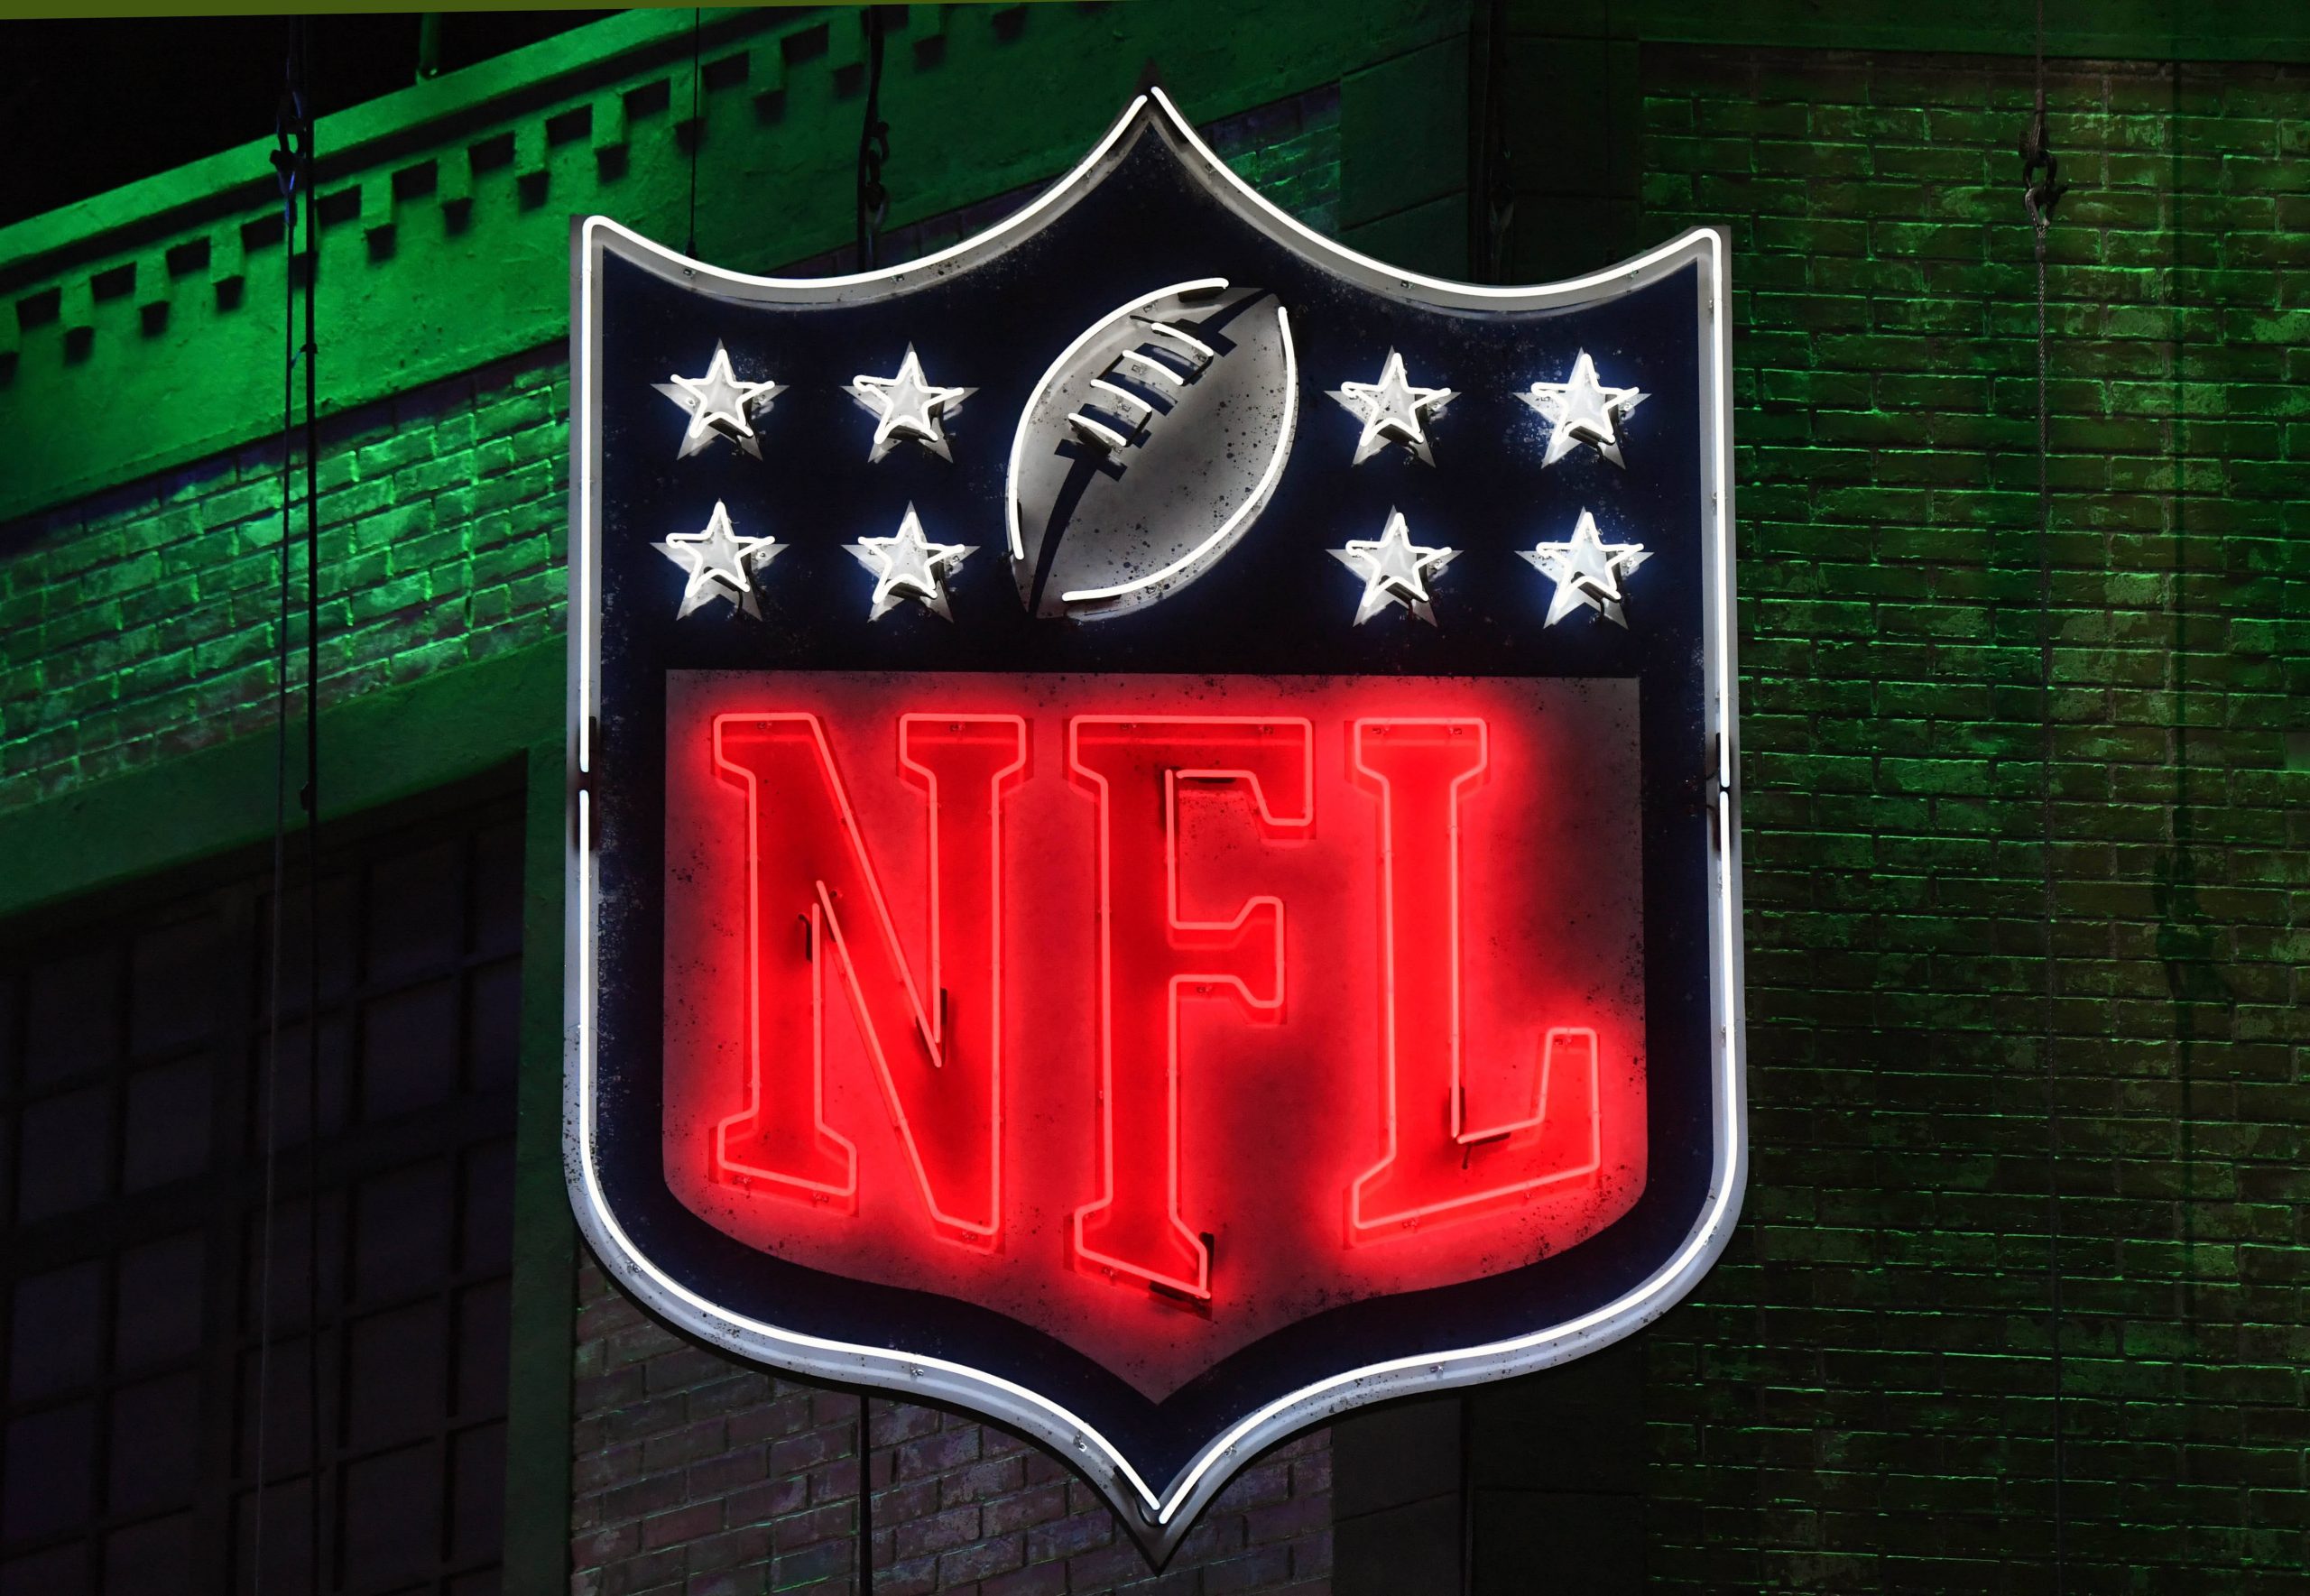 NFL Spielplan 2023/24 - Wer wird der First Overall Pick im NFL Draft 2023?